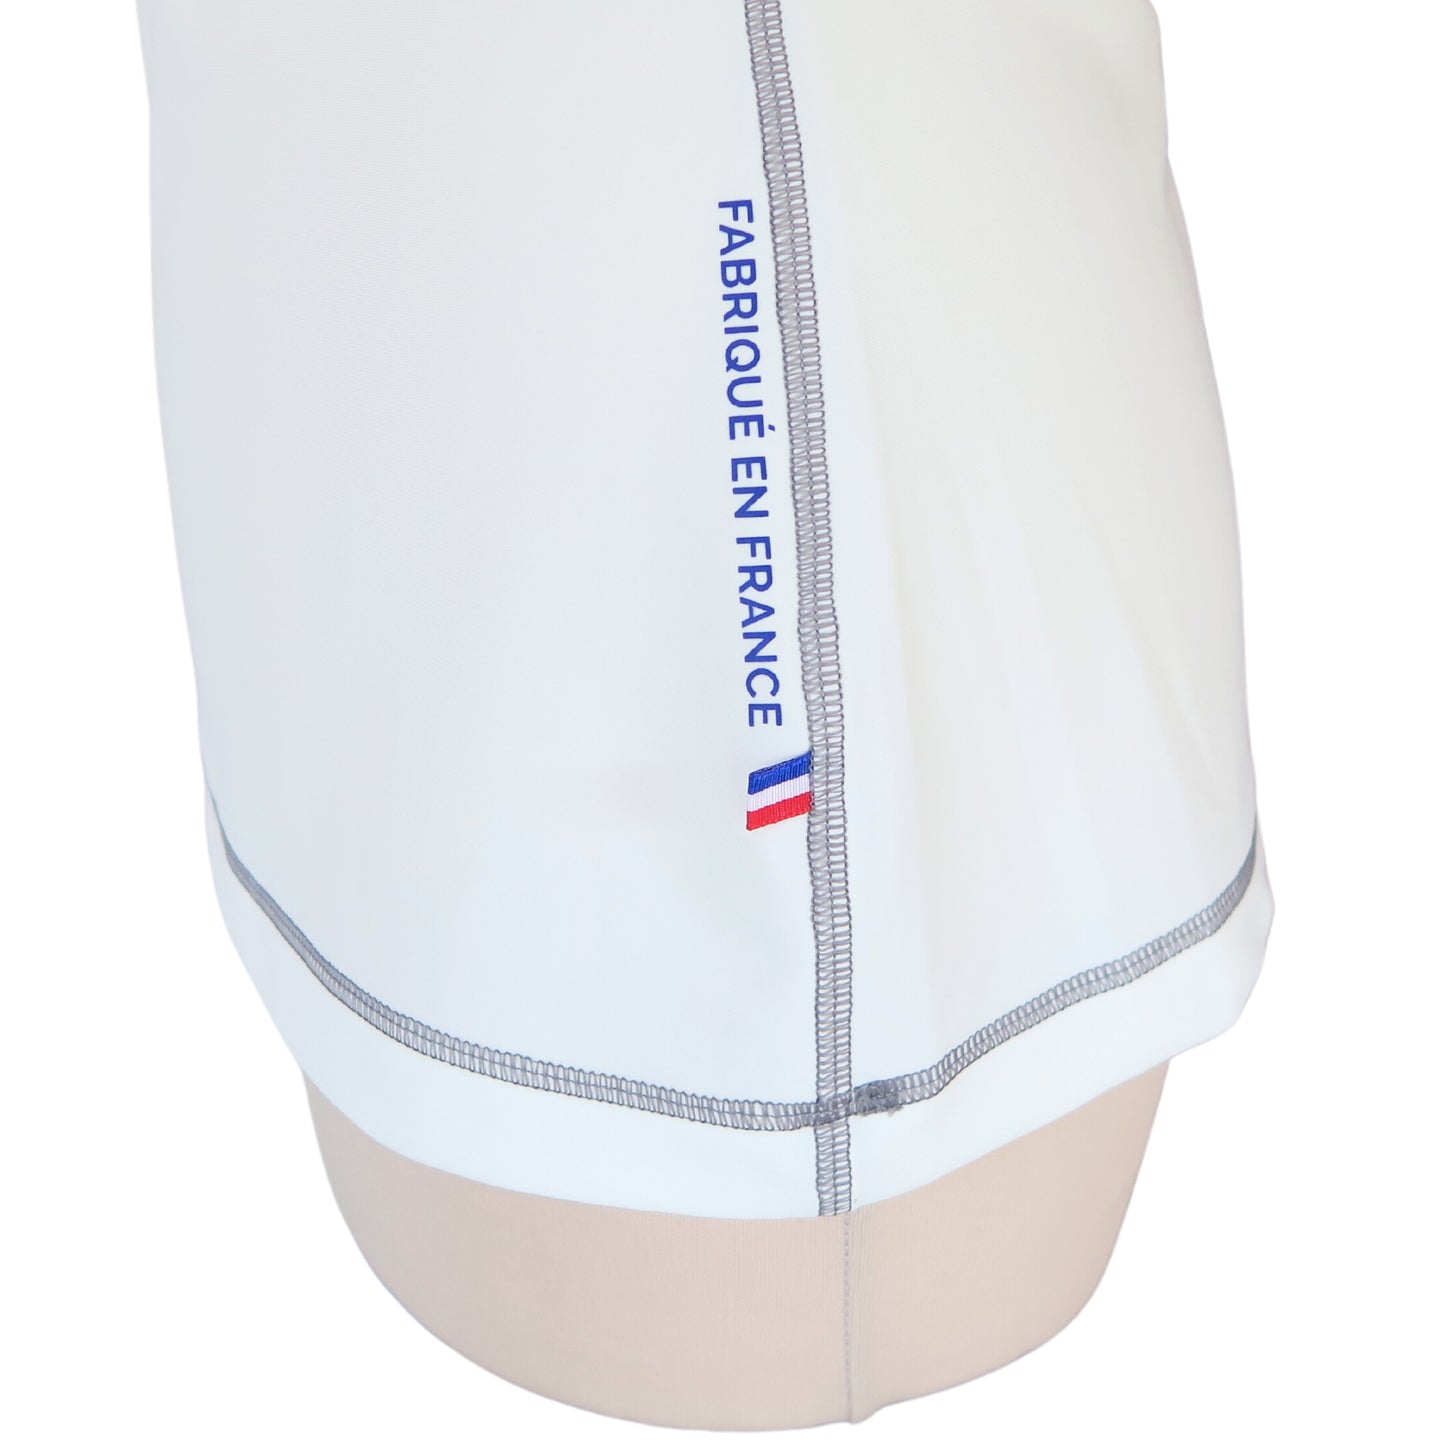 ashguard lycra anti uv femme manches courtes blanc fabriqué en France UPF50+ Made in France avec des filets de pêche recyclés, écolo, durable, top maillot tee-shirt eco responsable F2M ruban tricolore